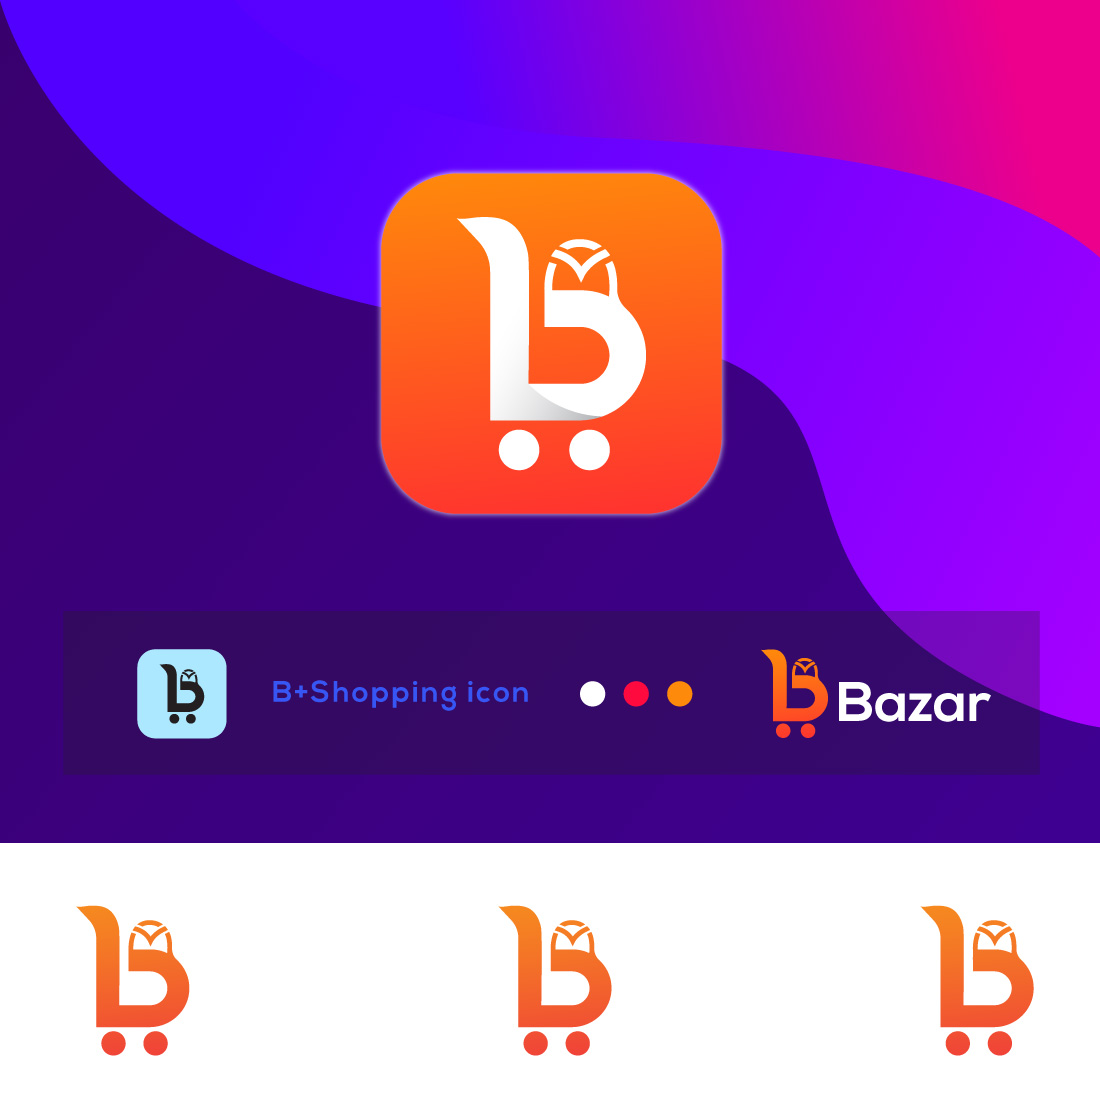 Bazar Shop - Letter B Logo cover image.